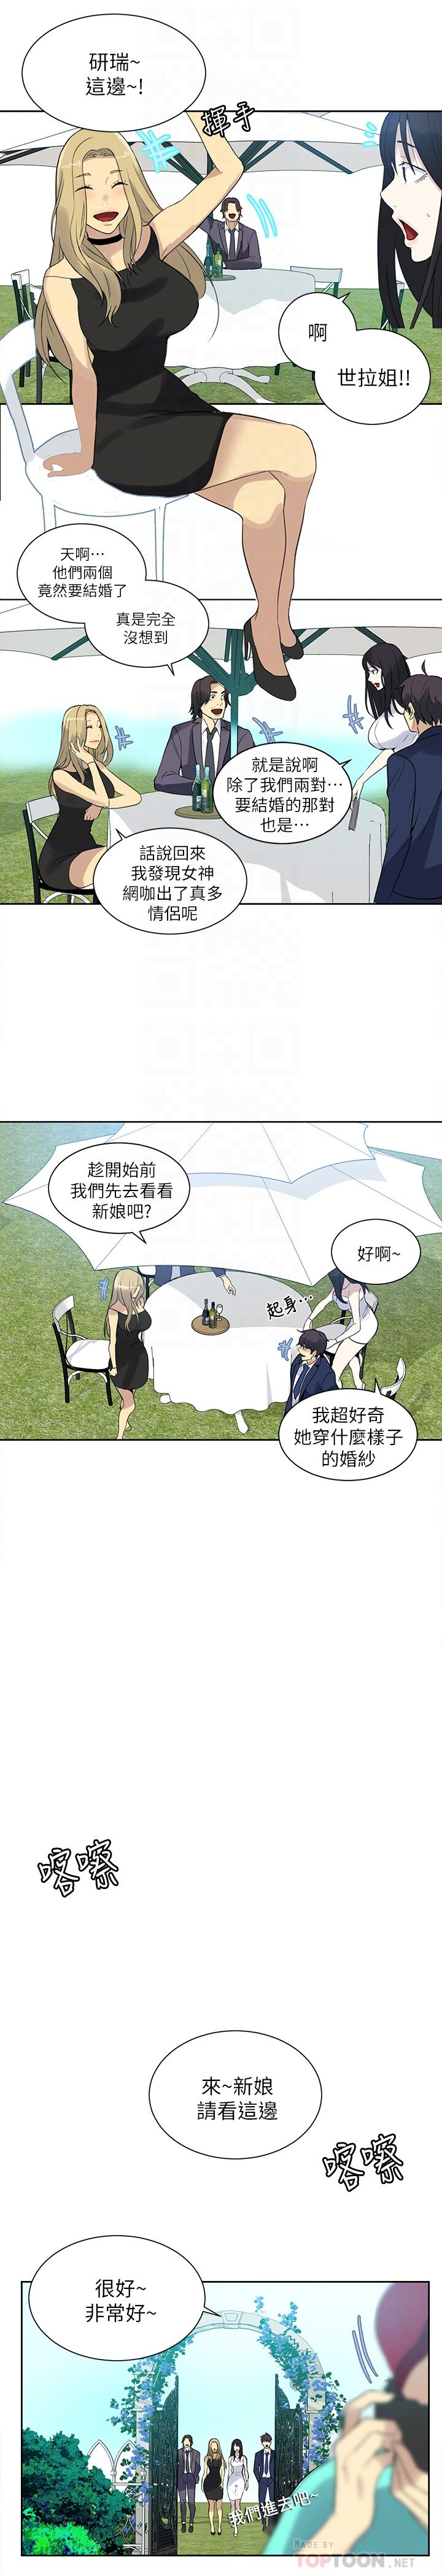 女神网咖  最终话-准新娘的最后一次服务 漫画图片7.jpg